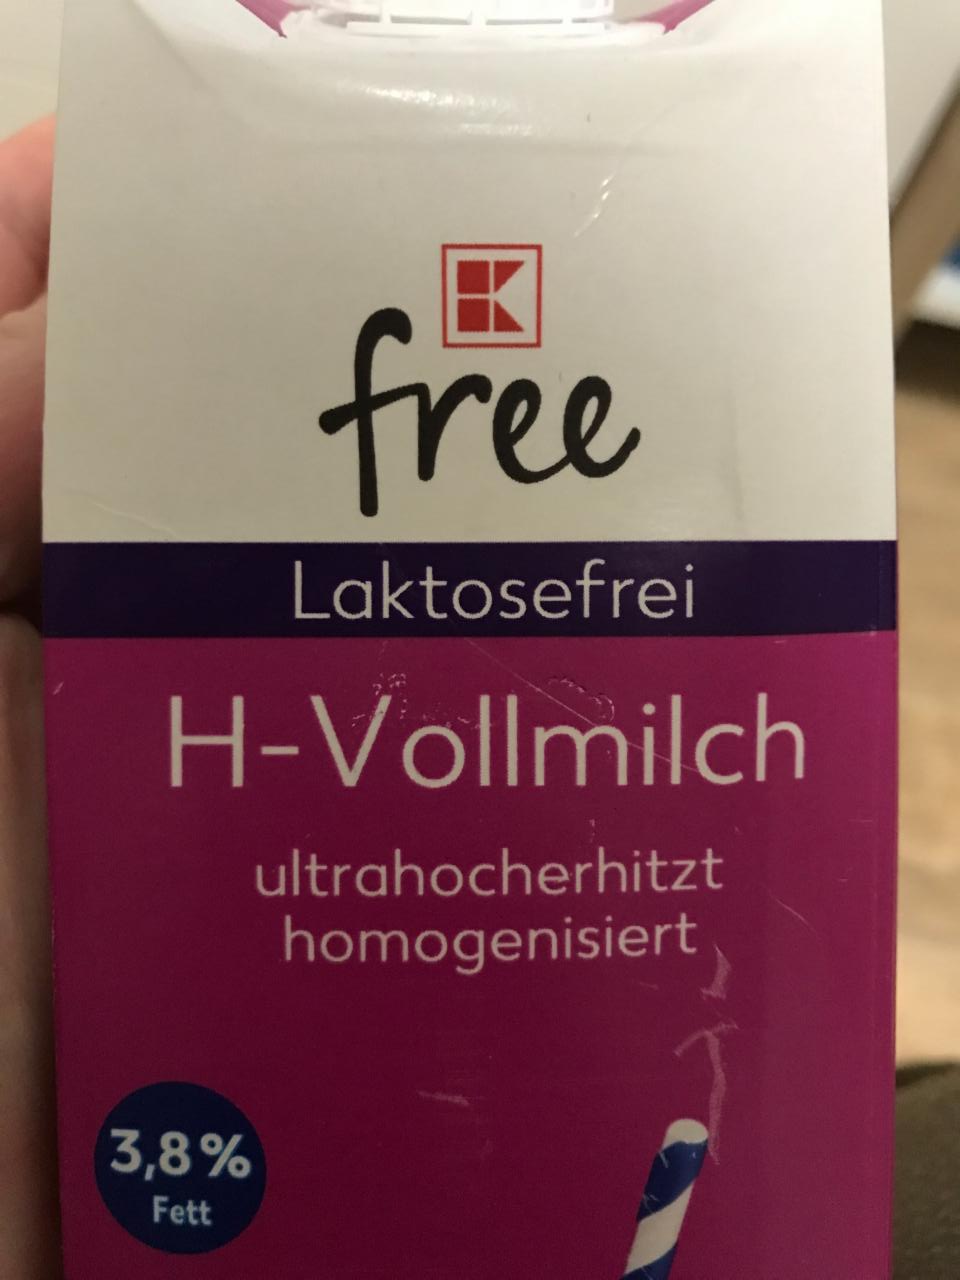 Fotografie - Laktosefreie H-VollMilch 3,8% fett K-free